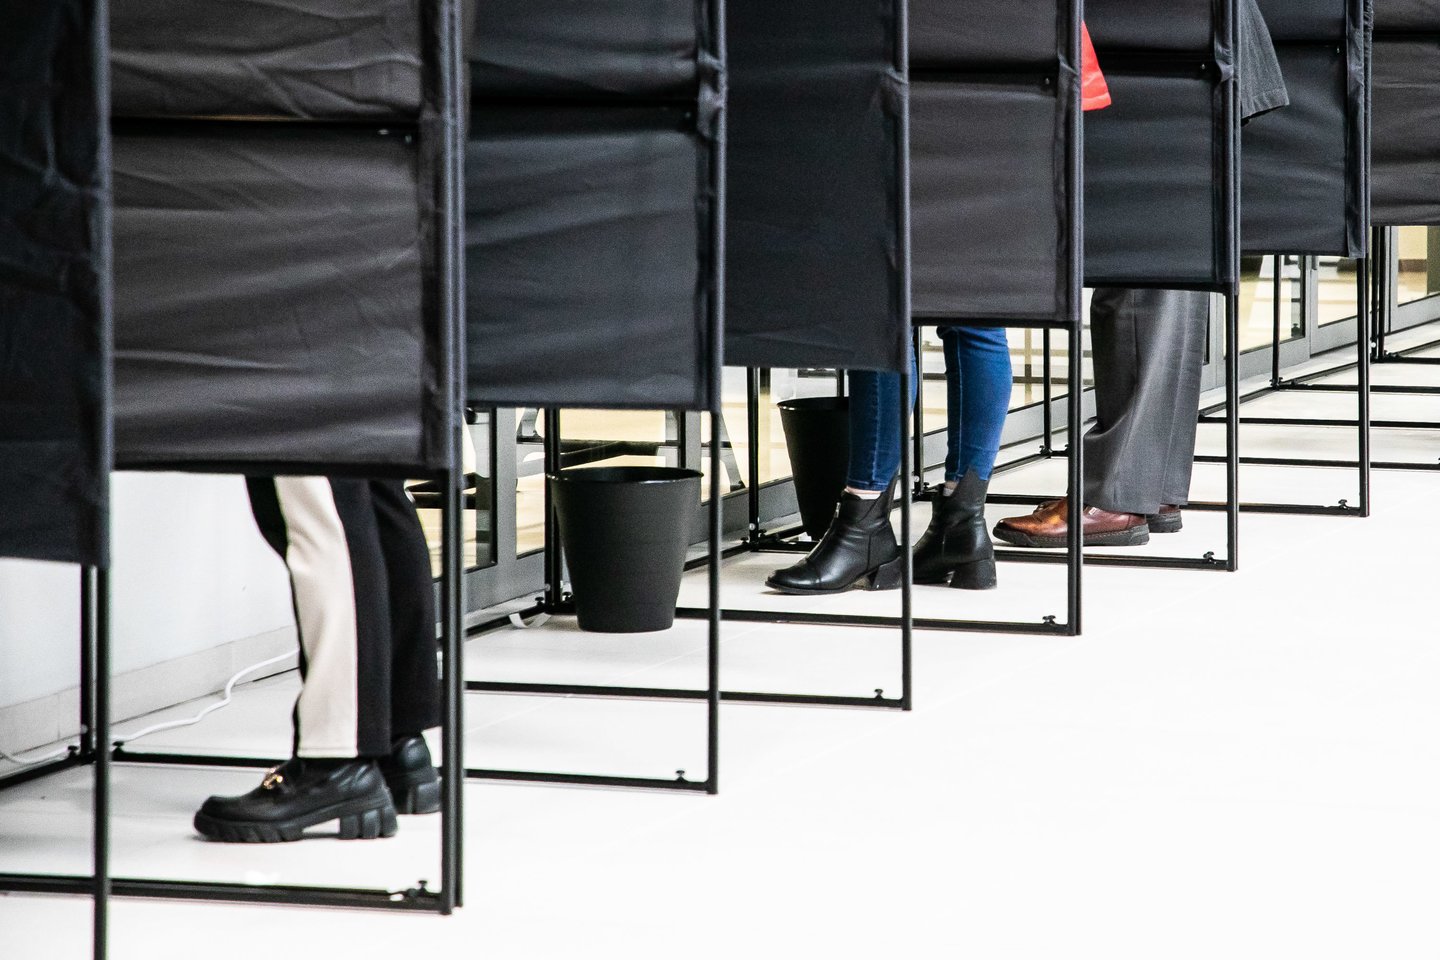 Pirmoji išankstinio balsavimo savivaldos rinkimuose diena: preliminariais duomenimis balsavo per 23 tūkst. rinkėjų.<br>D.Labučio (ELTA) nuotr.